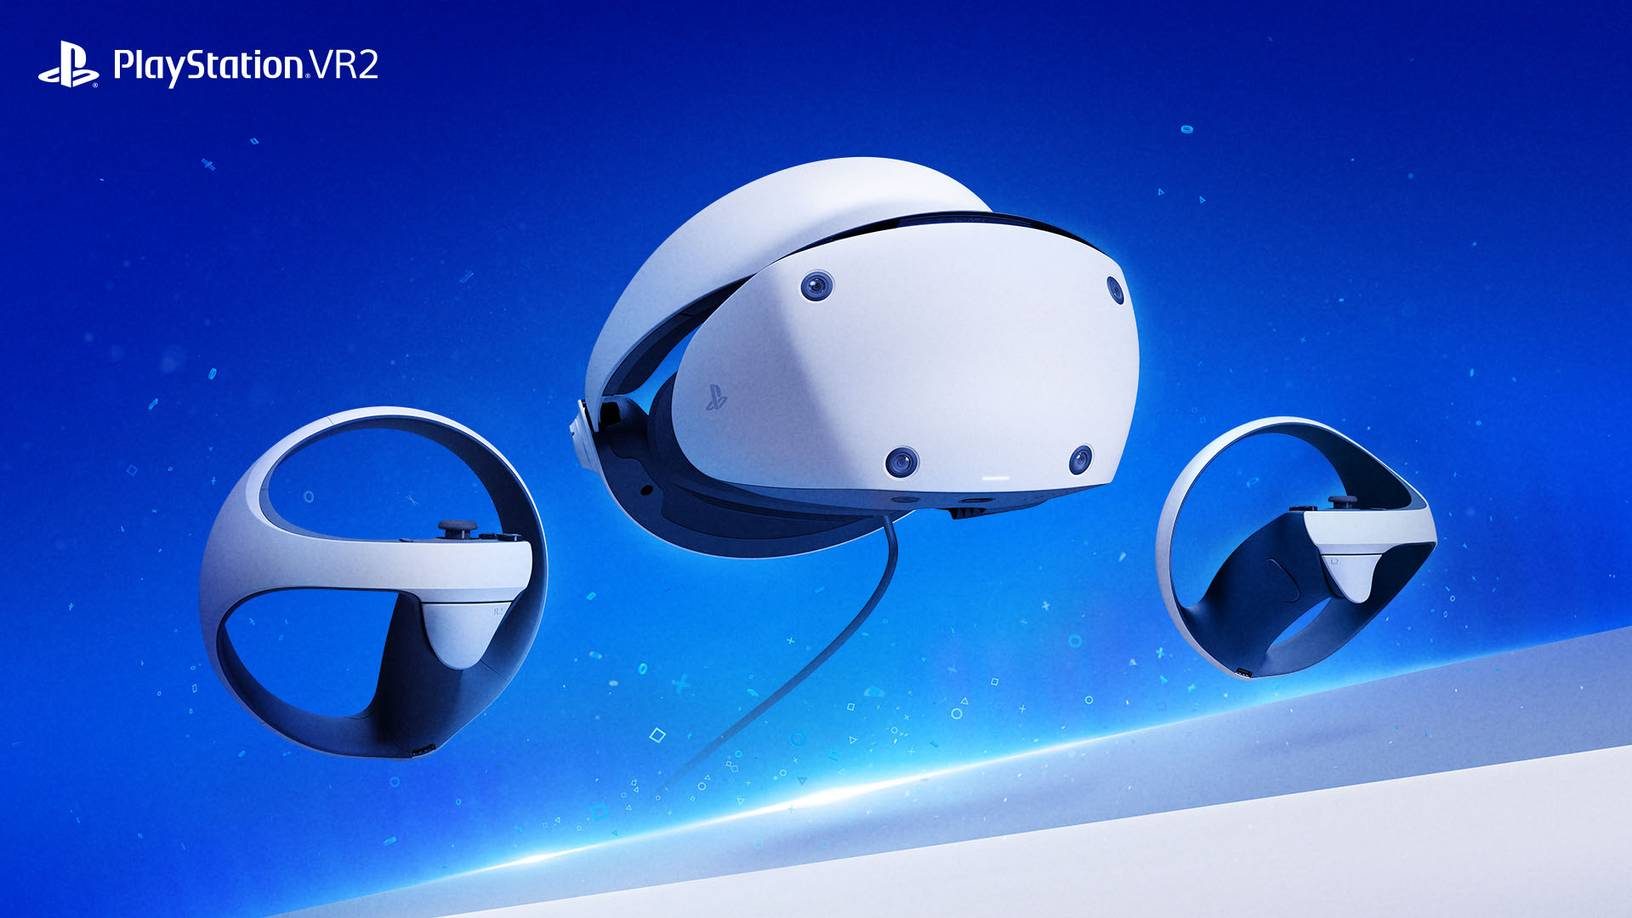 Al borde Sustancialmente orquesta PlayStation VR2 llegará a inicios de 2023 – PlayStation.Blog LATAM